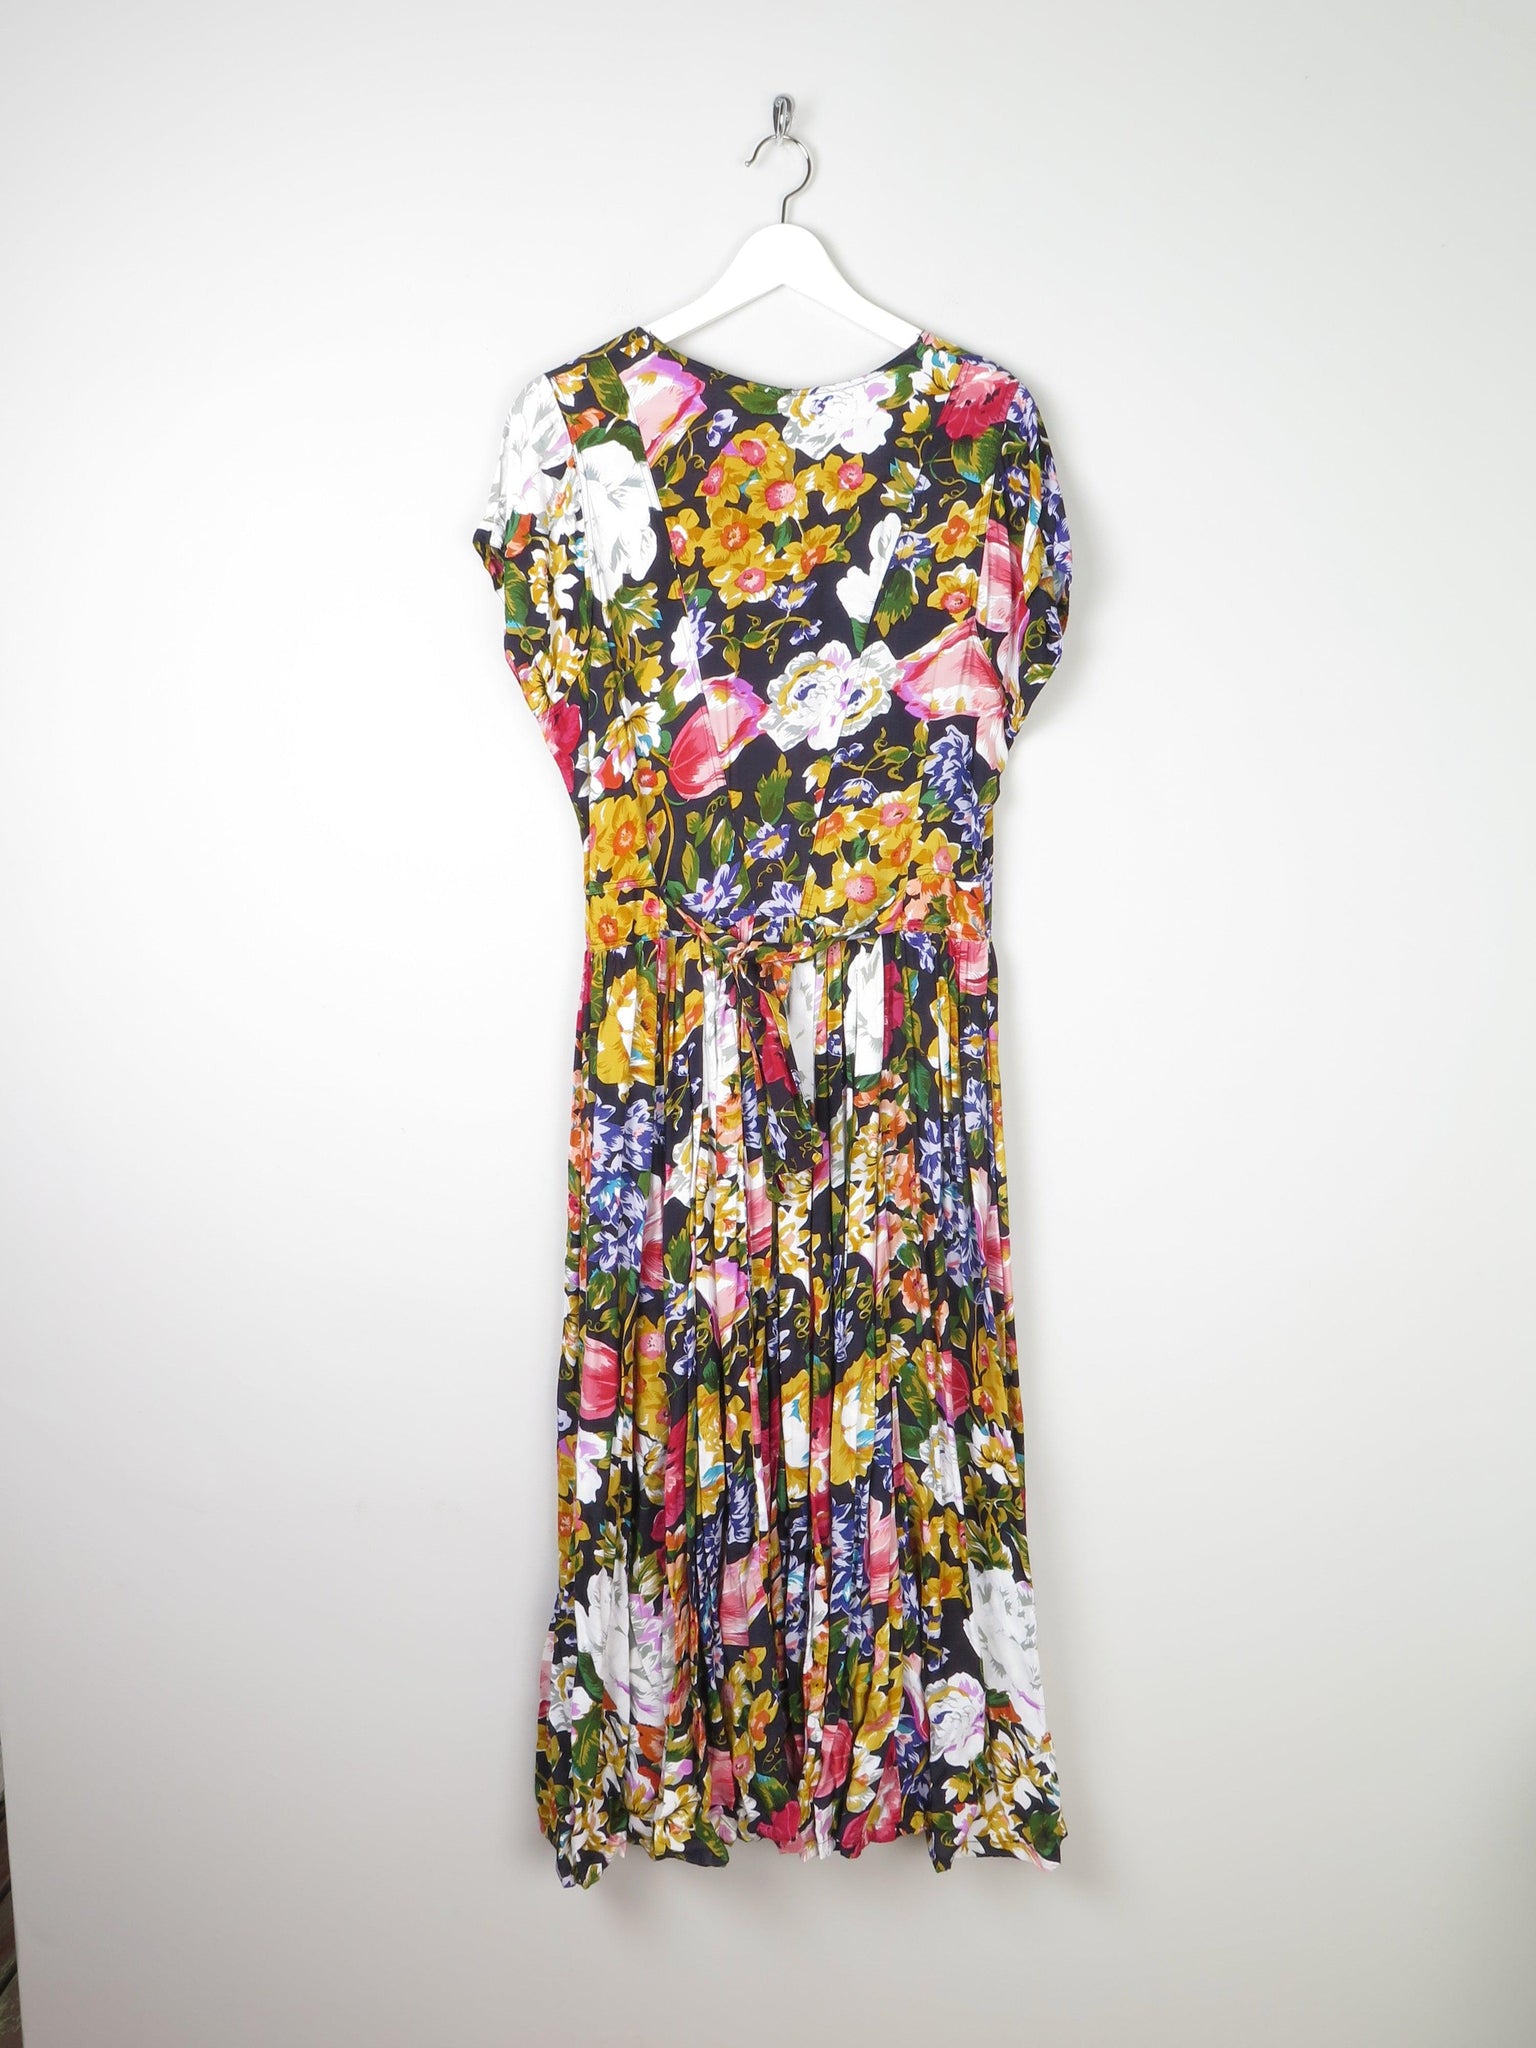 Floral Vintage Long Dress 10/12 - The Harlequin